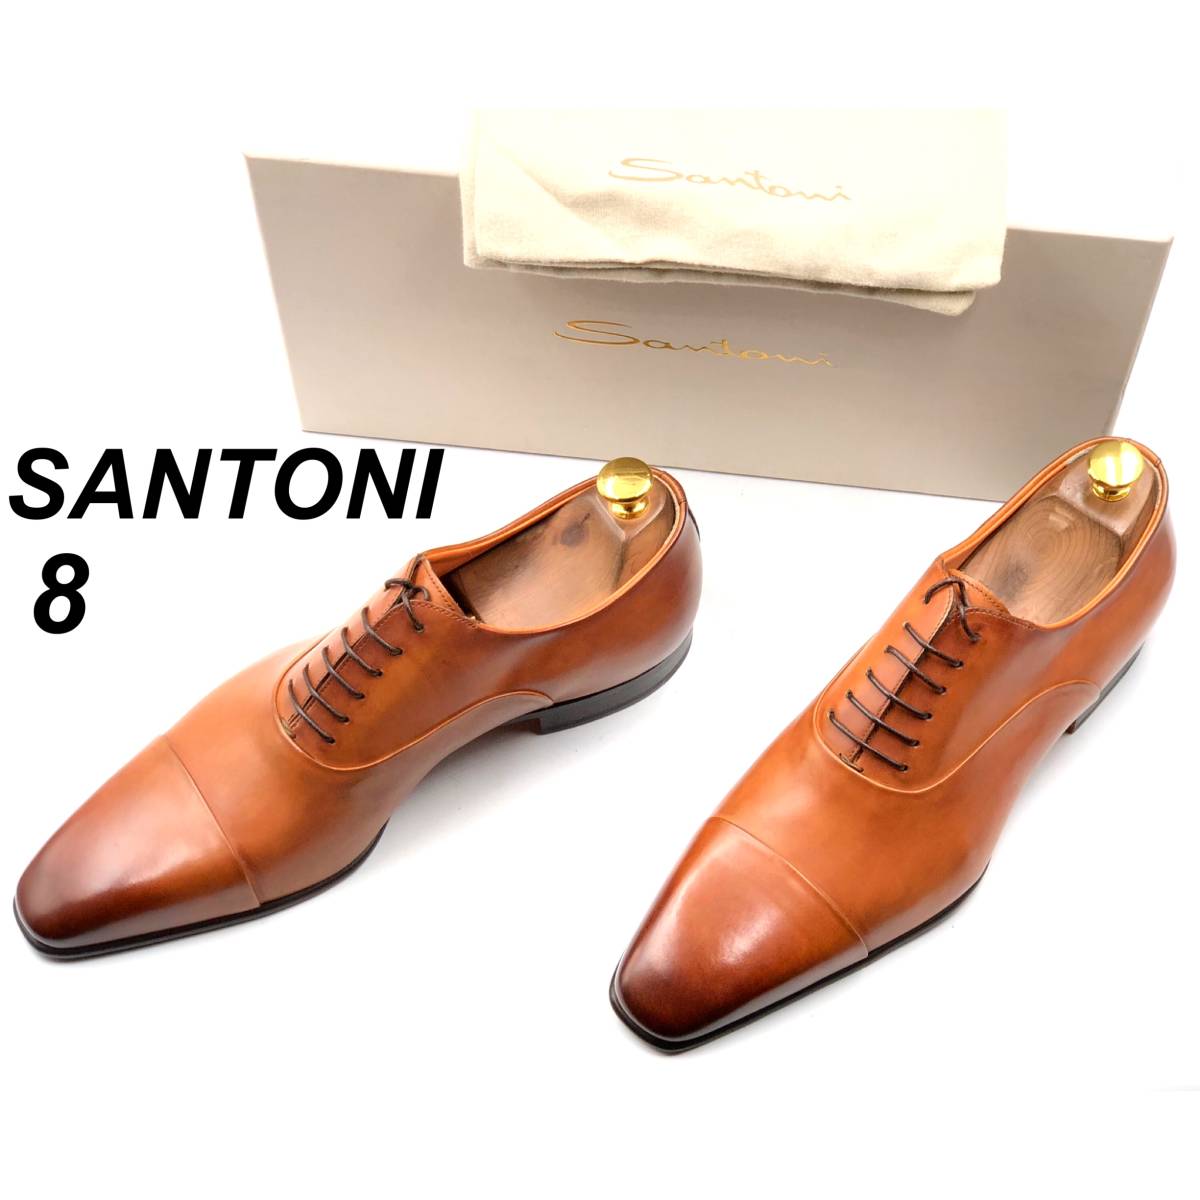 即決 未使用 SANTONI サントーニ 26cm 8 6365 メンズ レザーシューズ ストレートチップ 内羽根 茶 ブラウン 箱付 保存袋付 革靴 皮靴